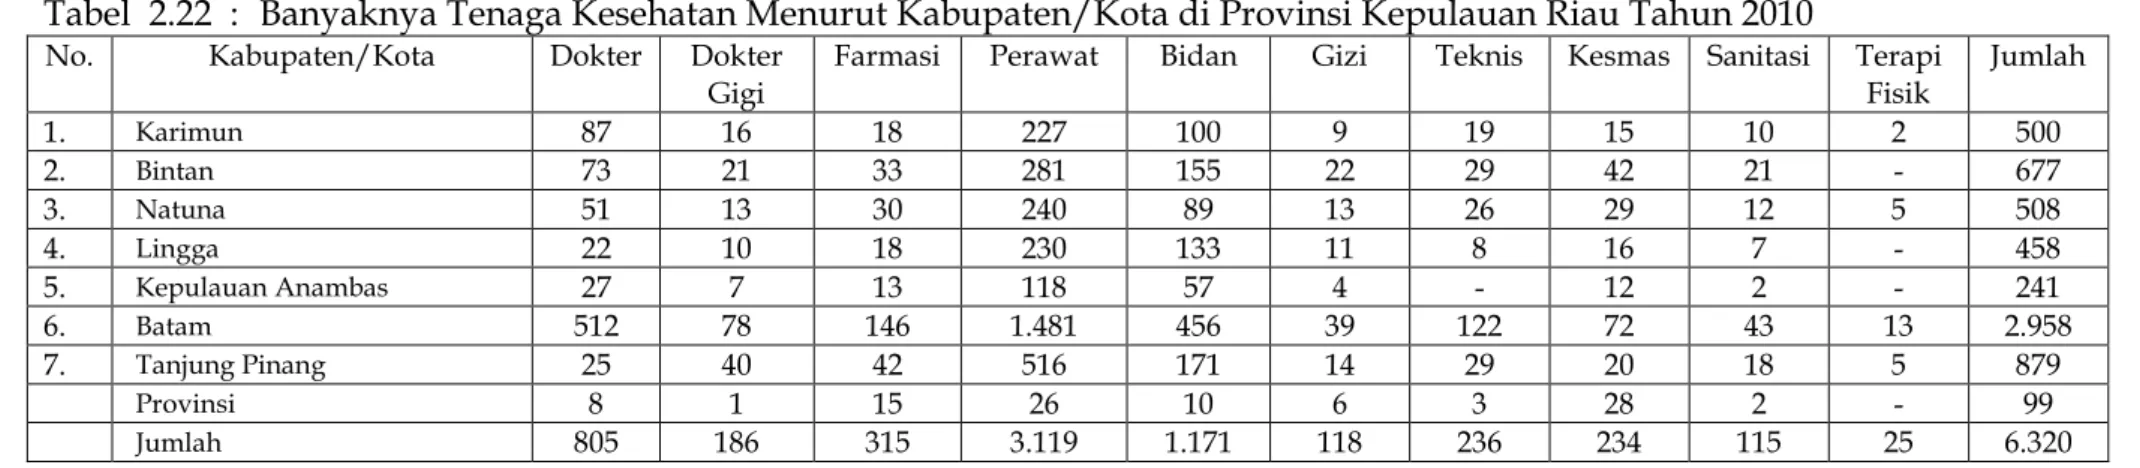 Tabel 2.23 : Rumah Sakit Umum Pemerintah, Swasta dan Kapasitas Tempat Tidur Menurut Kabupaten/Kota Tahun 2010 